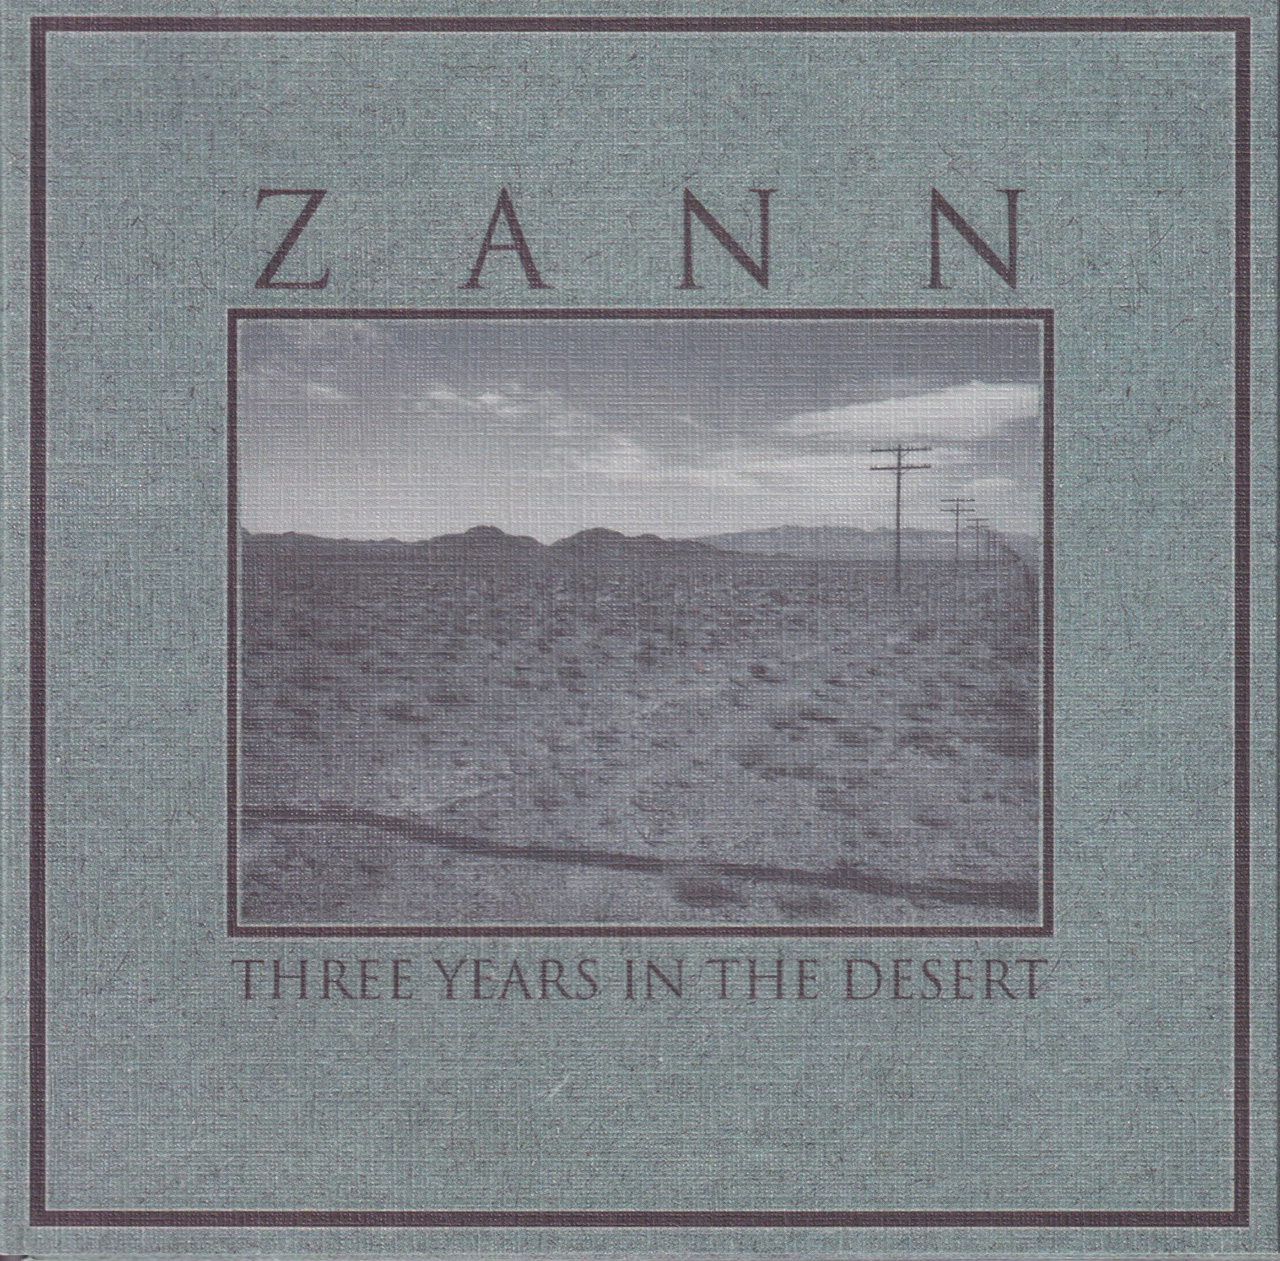 THREE YEARS IN THE DESERT / ZANN